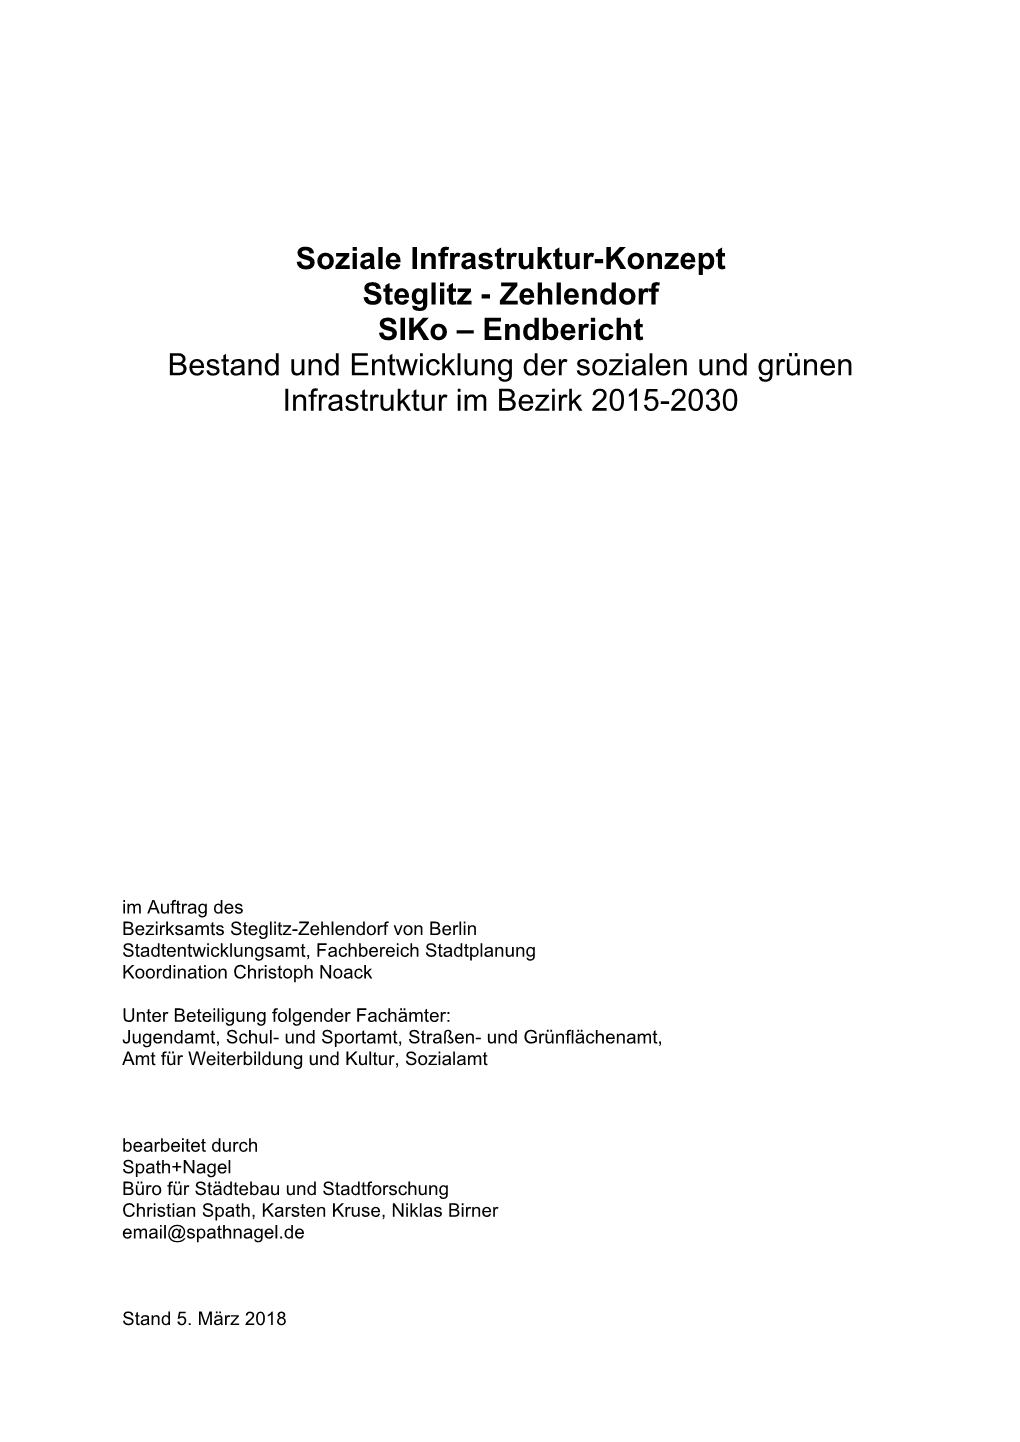 Soziale Infrastruktur-Konzept Steglitz - Zehlendorf Siko – Endbericht Bestand Und Entwicklung Der Sozialen Und Grünen Infrastruktur Im Bezirk 2015-2030